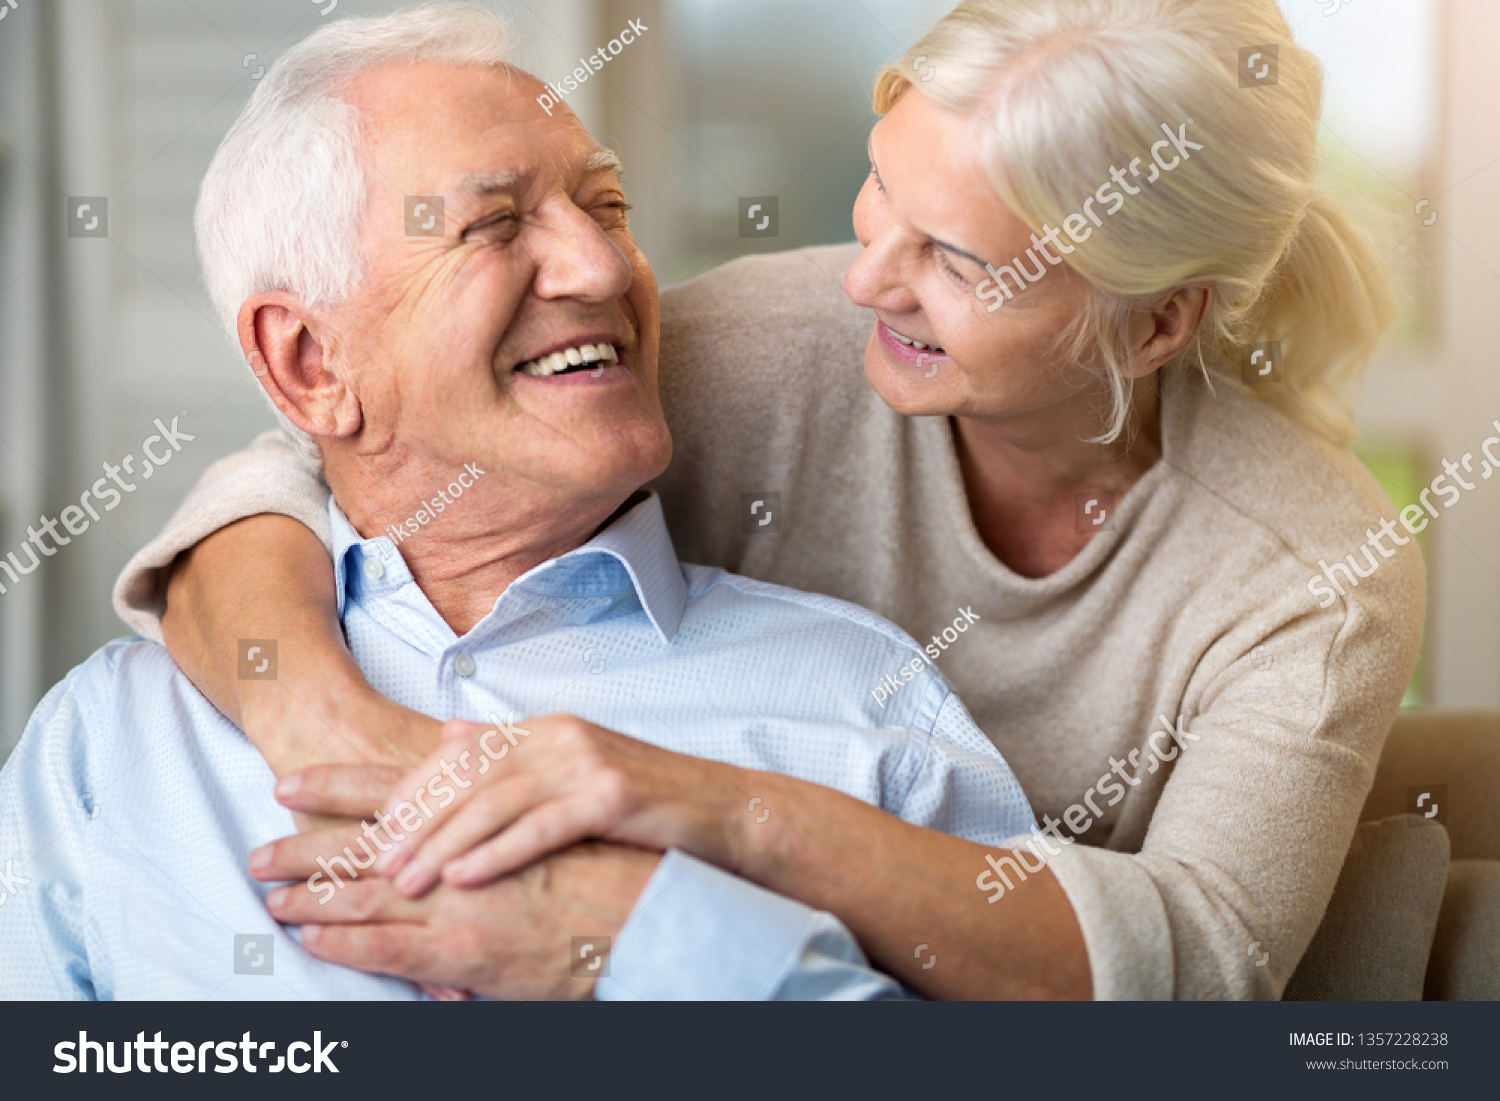 自宅のソファに座っている幸せな老夫婦のポートレート写真素材1357228238 Shutterstock